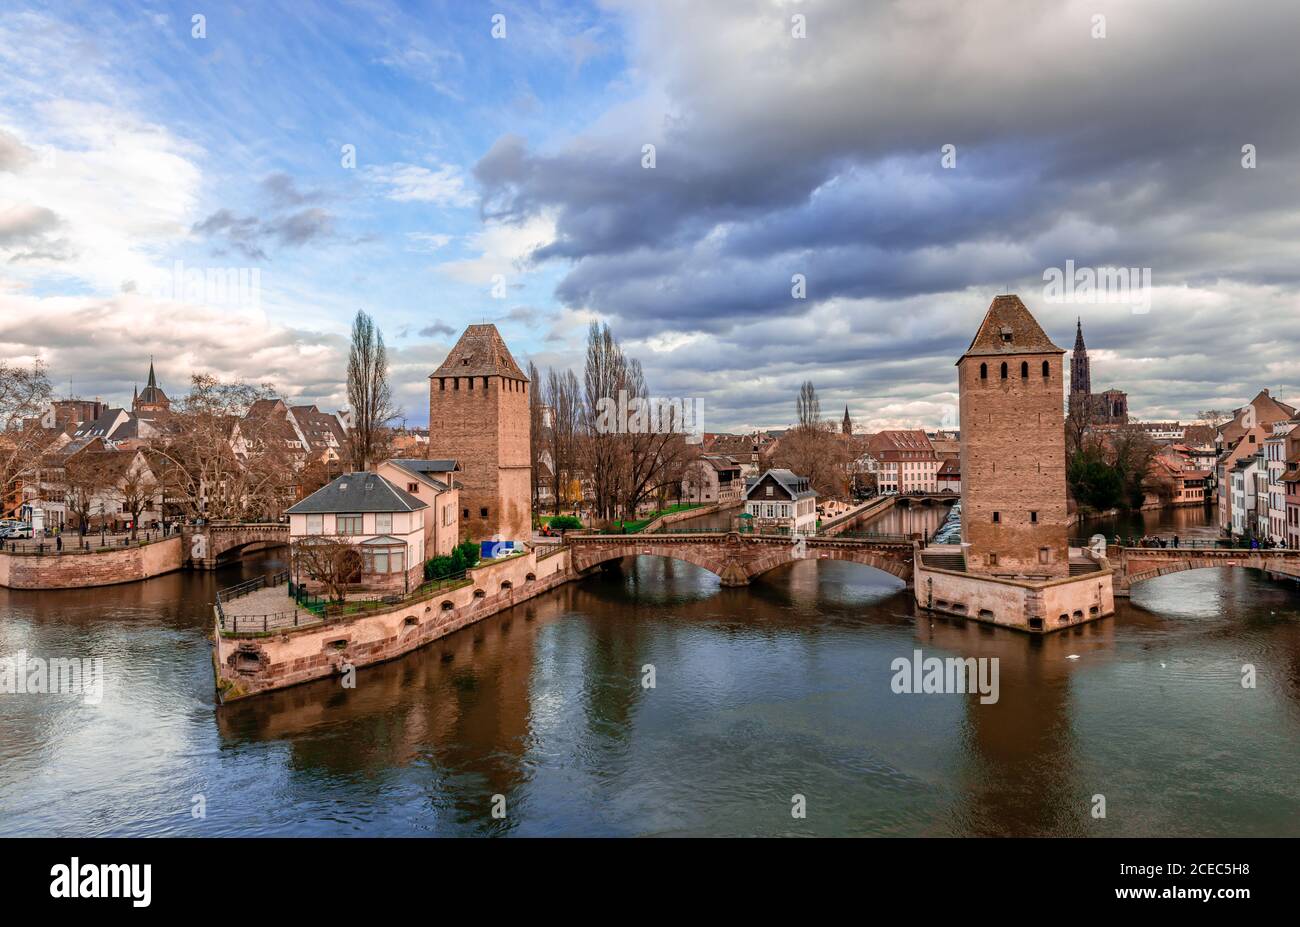 Les ponts Couverts, un ensemble de 3 ponts et 4 tours qui composent un travail défensif érigé au XIIIe siècle sur la rivière Ill à Strasbourg, en France. Banque D'Images